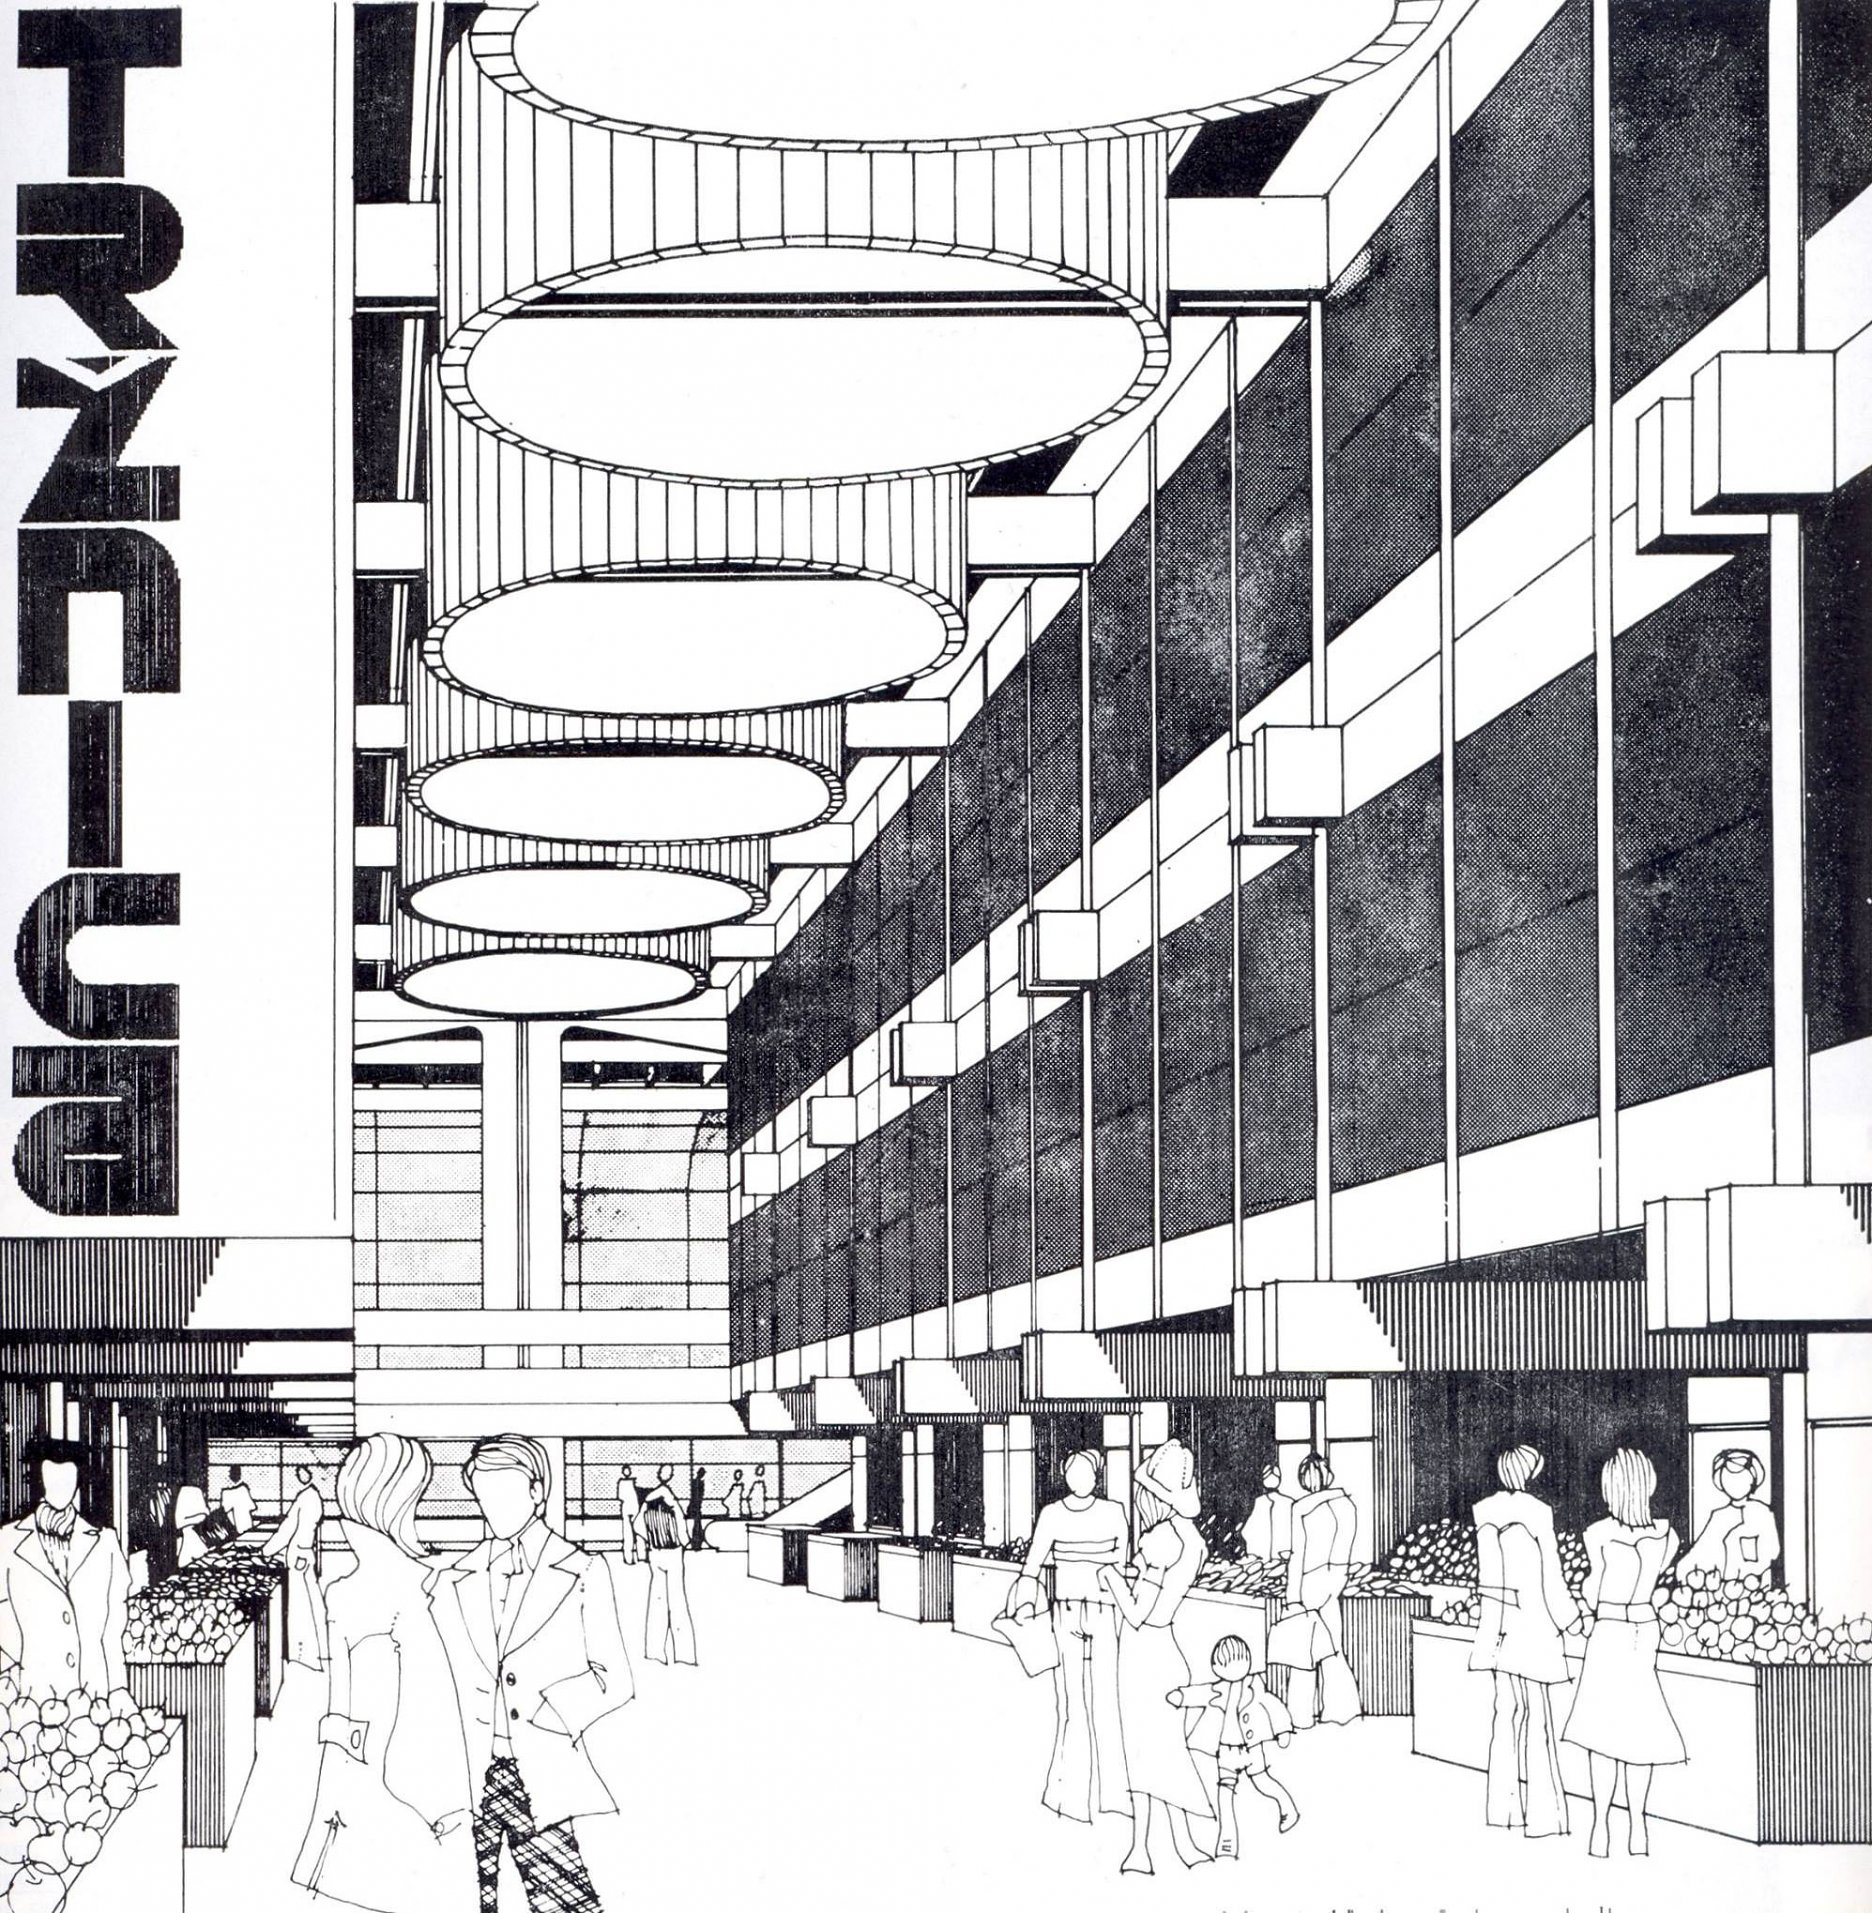 Tržnica na Trnavskom mýte v Bratislave 
Projekt: 1975-77
Realizácia: 1978-1981
Architektúra: Ivan Matušík
Konštrukcie: Pavel Čížek
